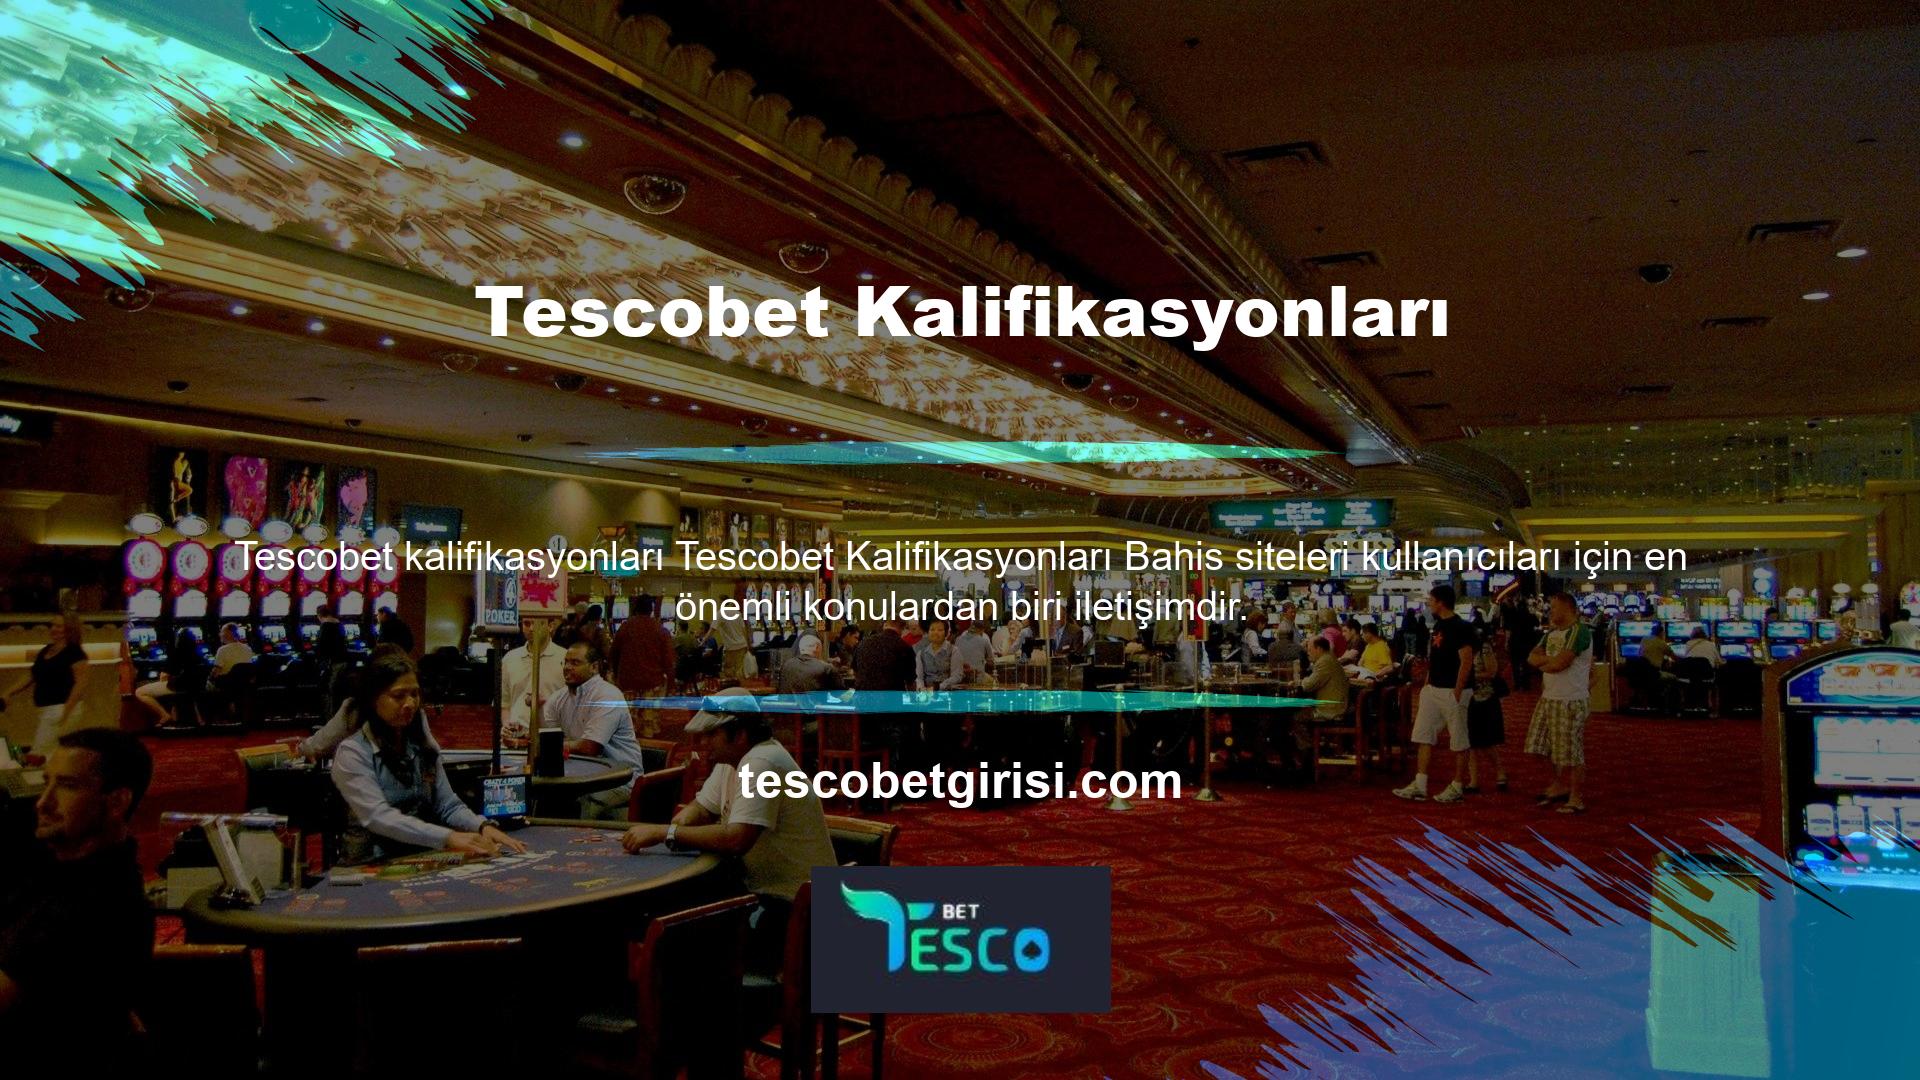 Tescobet bahis sitesi her zaman kullanıcı merkezli araştırma yapmış ve kullanıcı memnuniyetini hedeflemeye devam etmektedir